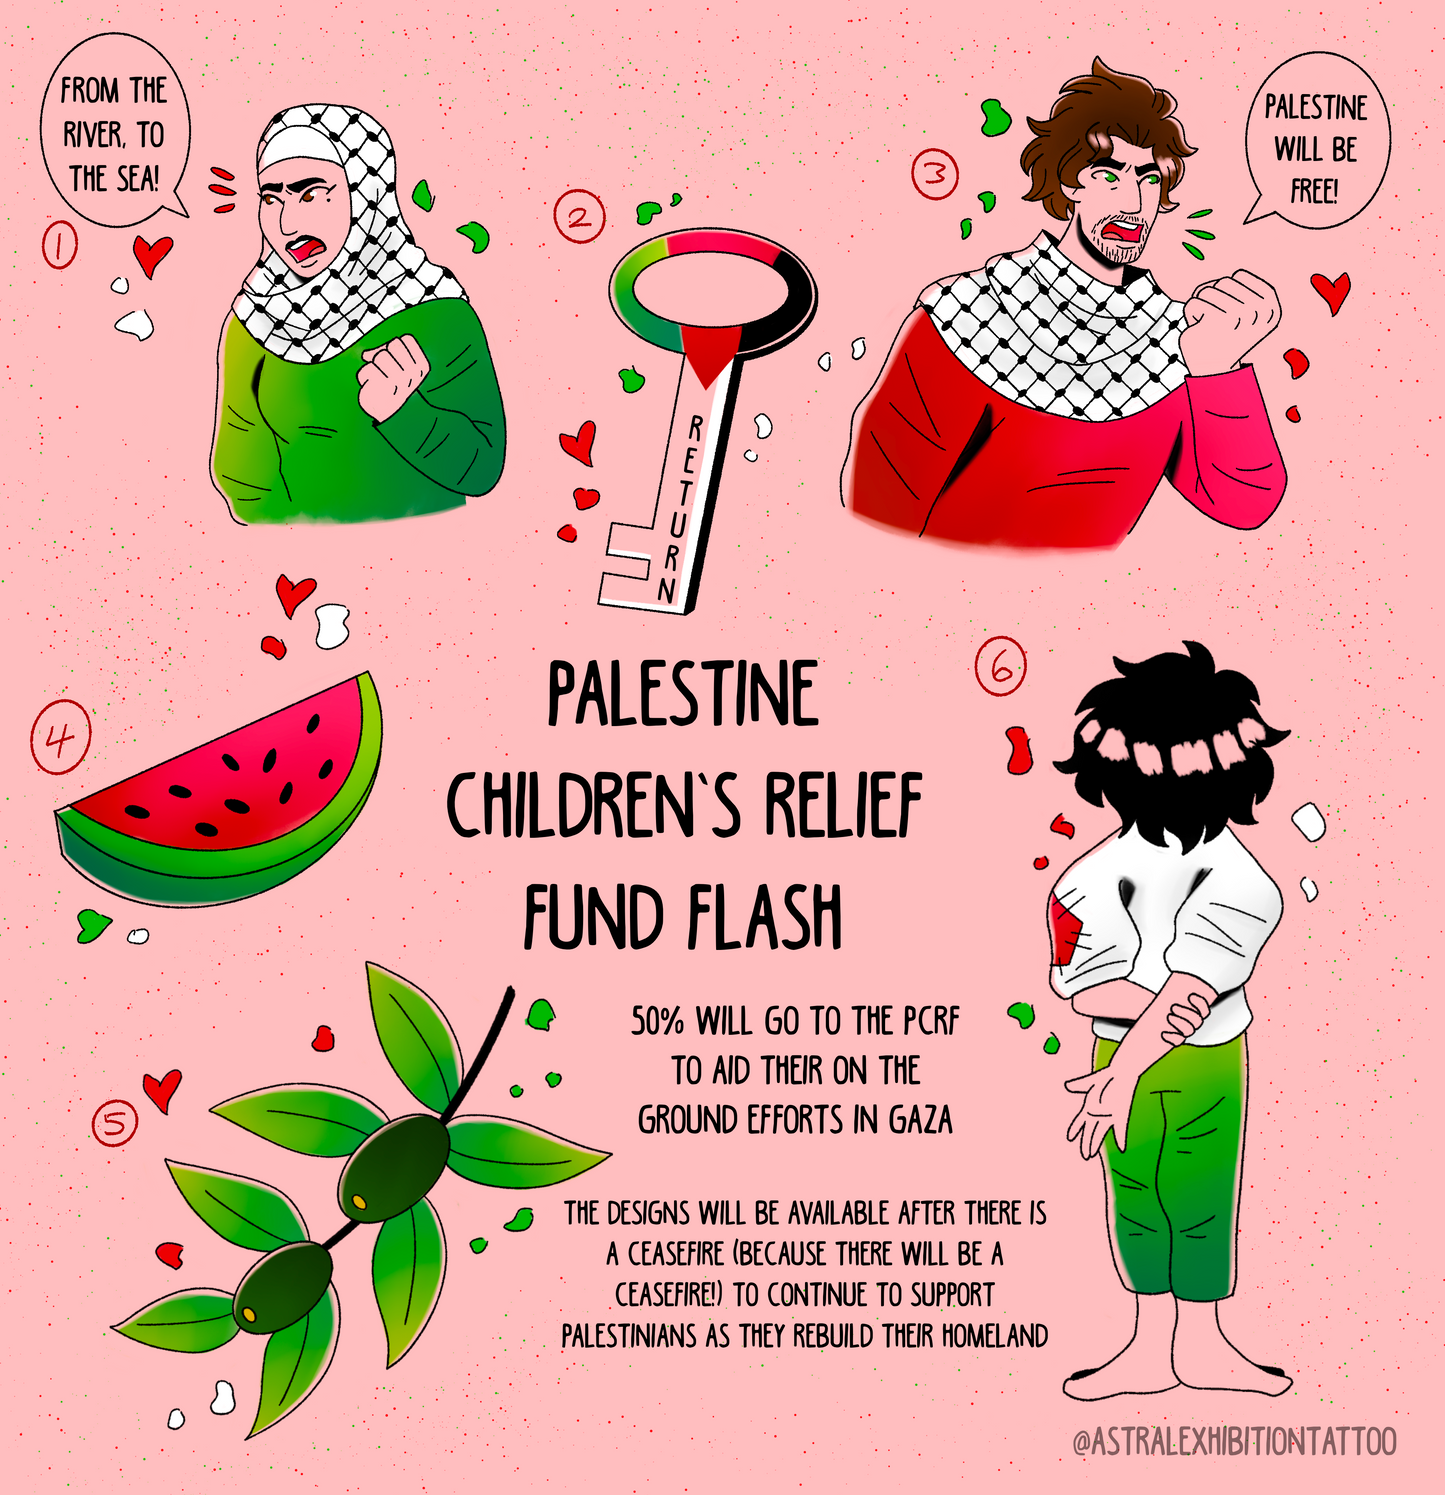 Palestine Children’s Relief Fund Flash